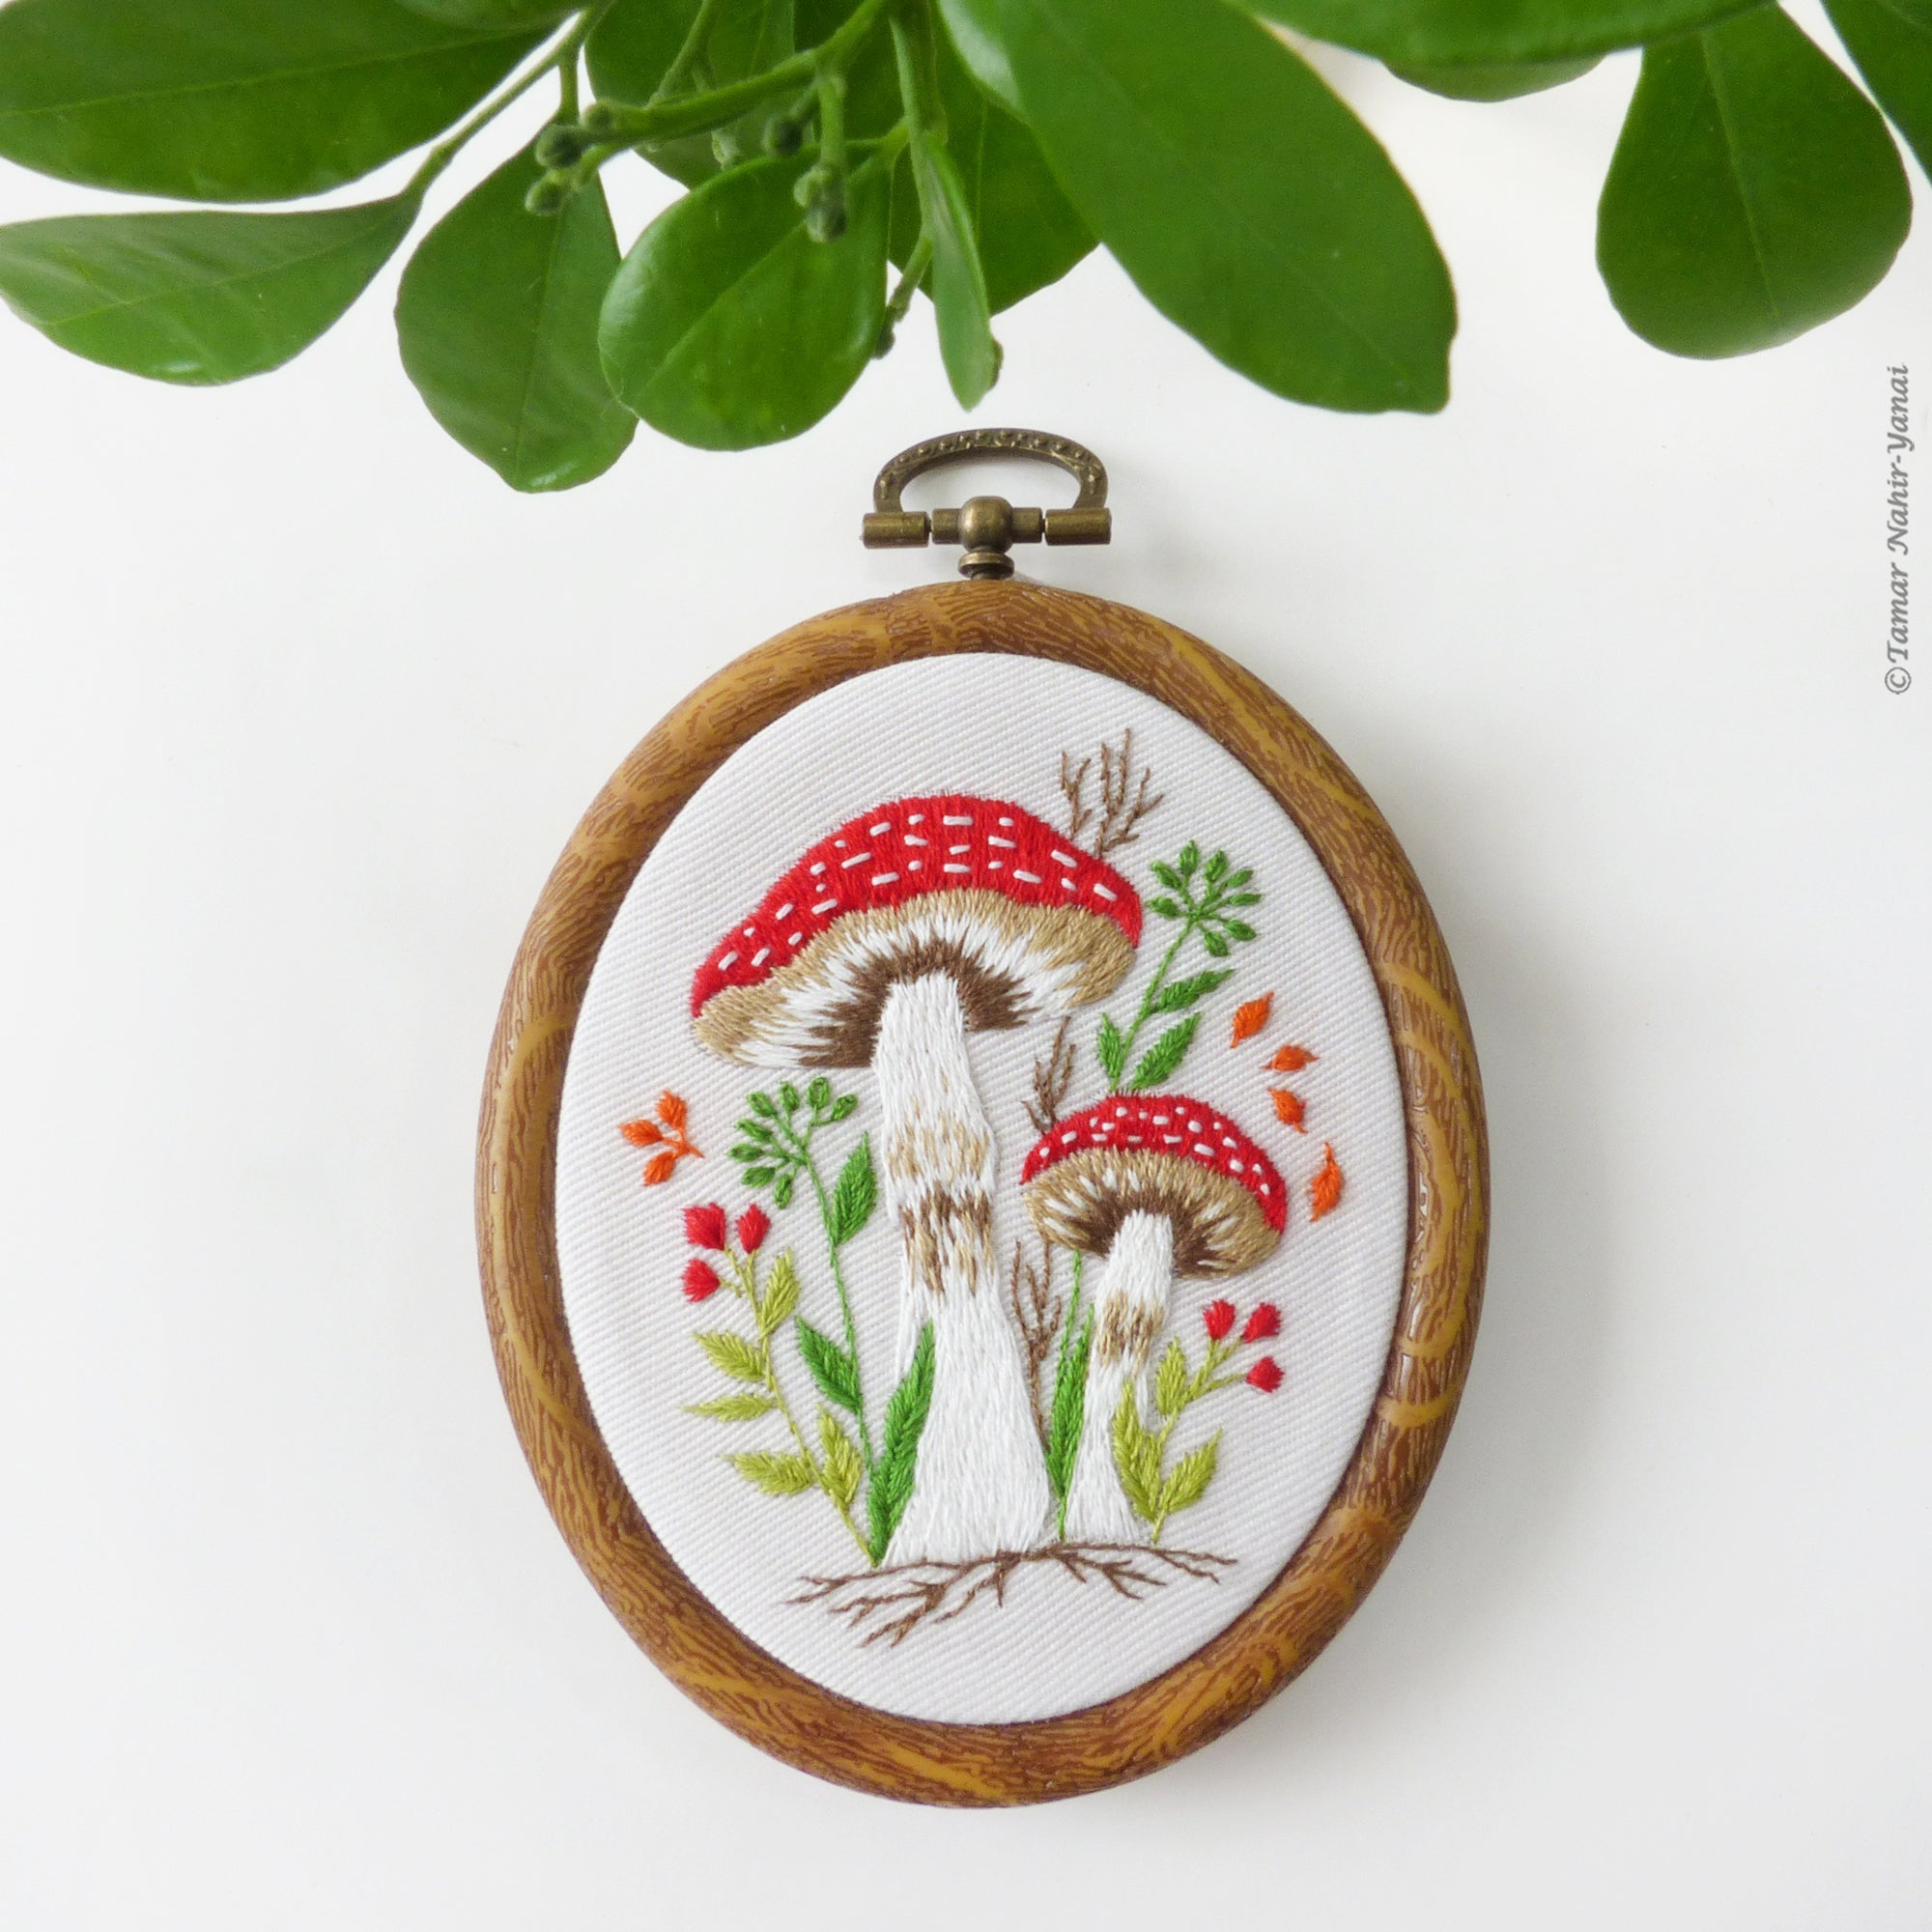 Tiny Mushrooms Hand Embroidery Kit